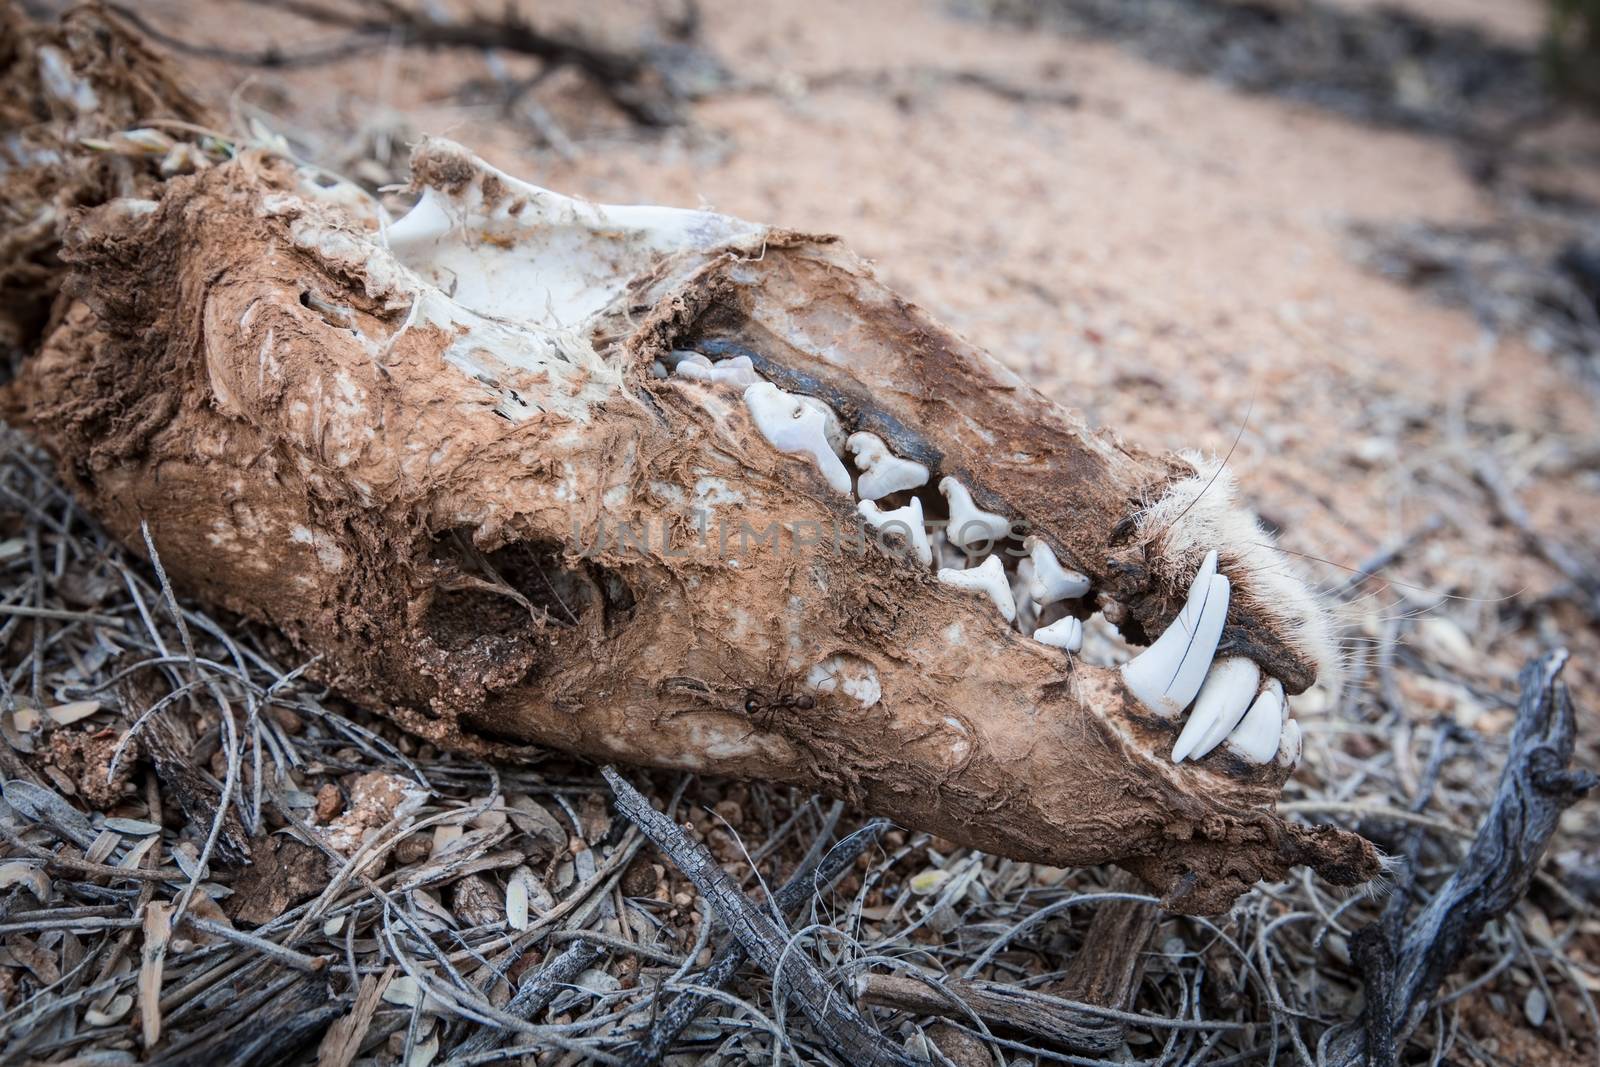 Coyote skull on the ground in desert